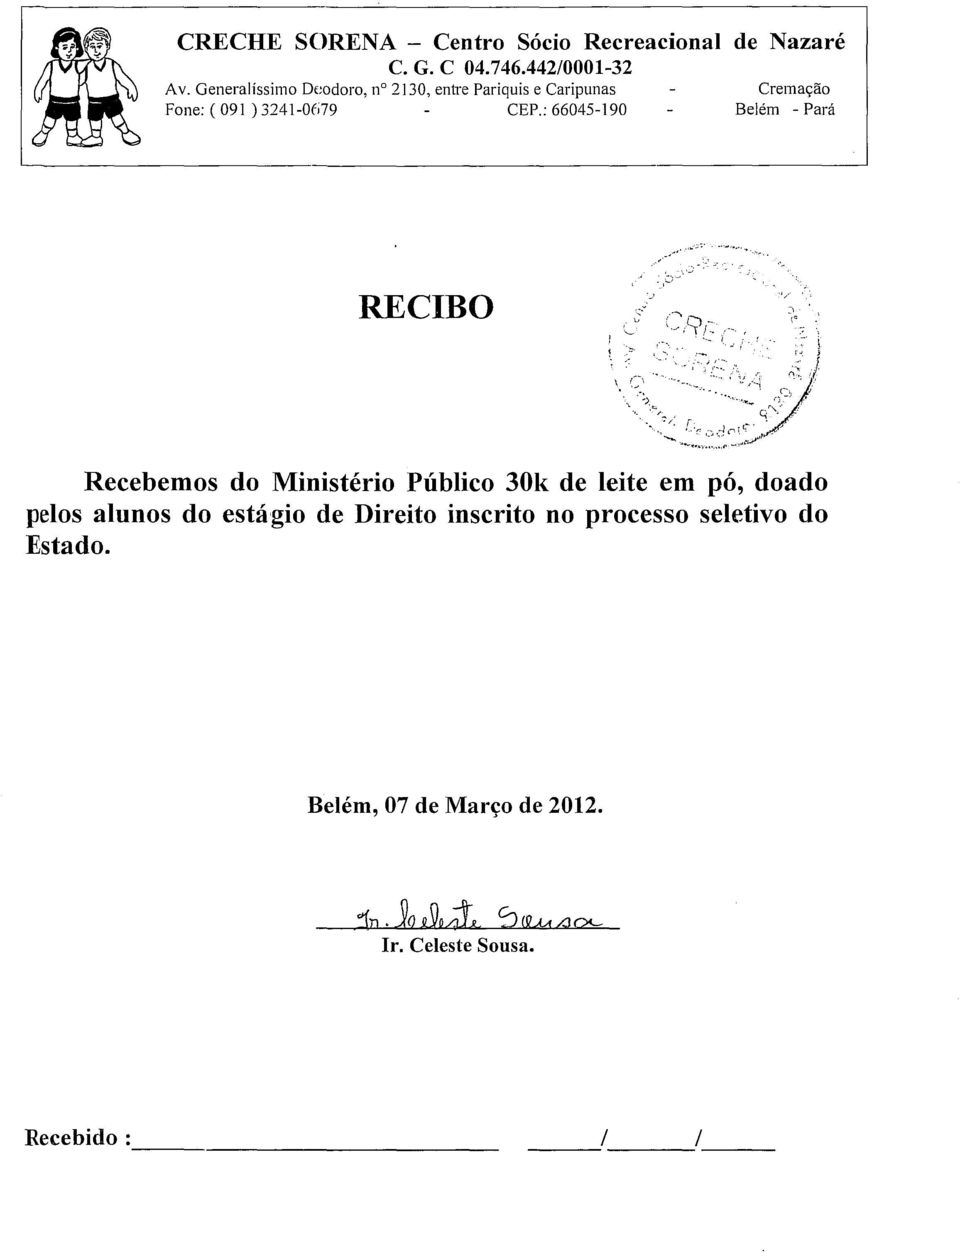 : 66045-190 Cremação Belém - Pará... '''.